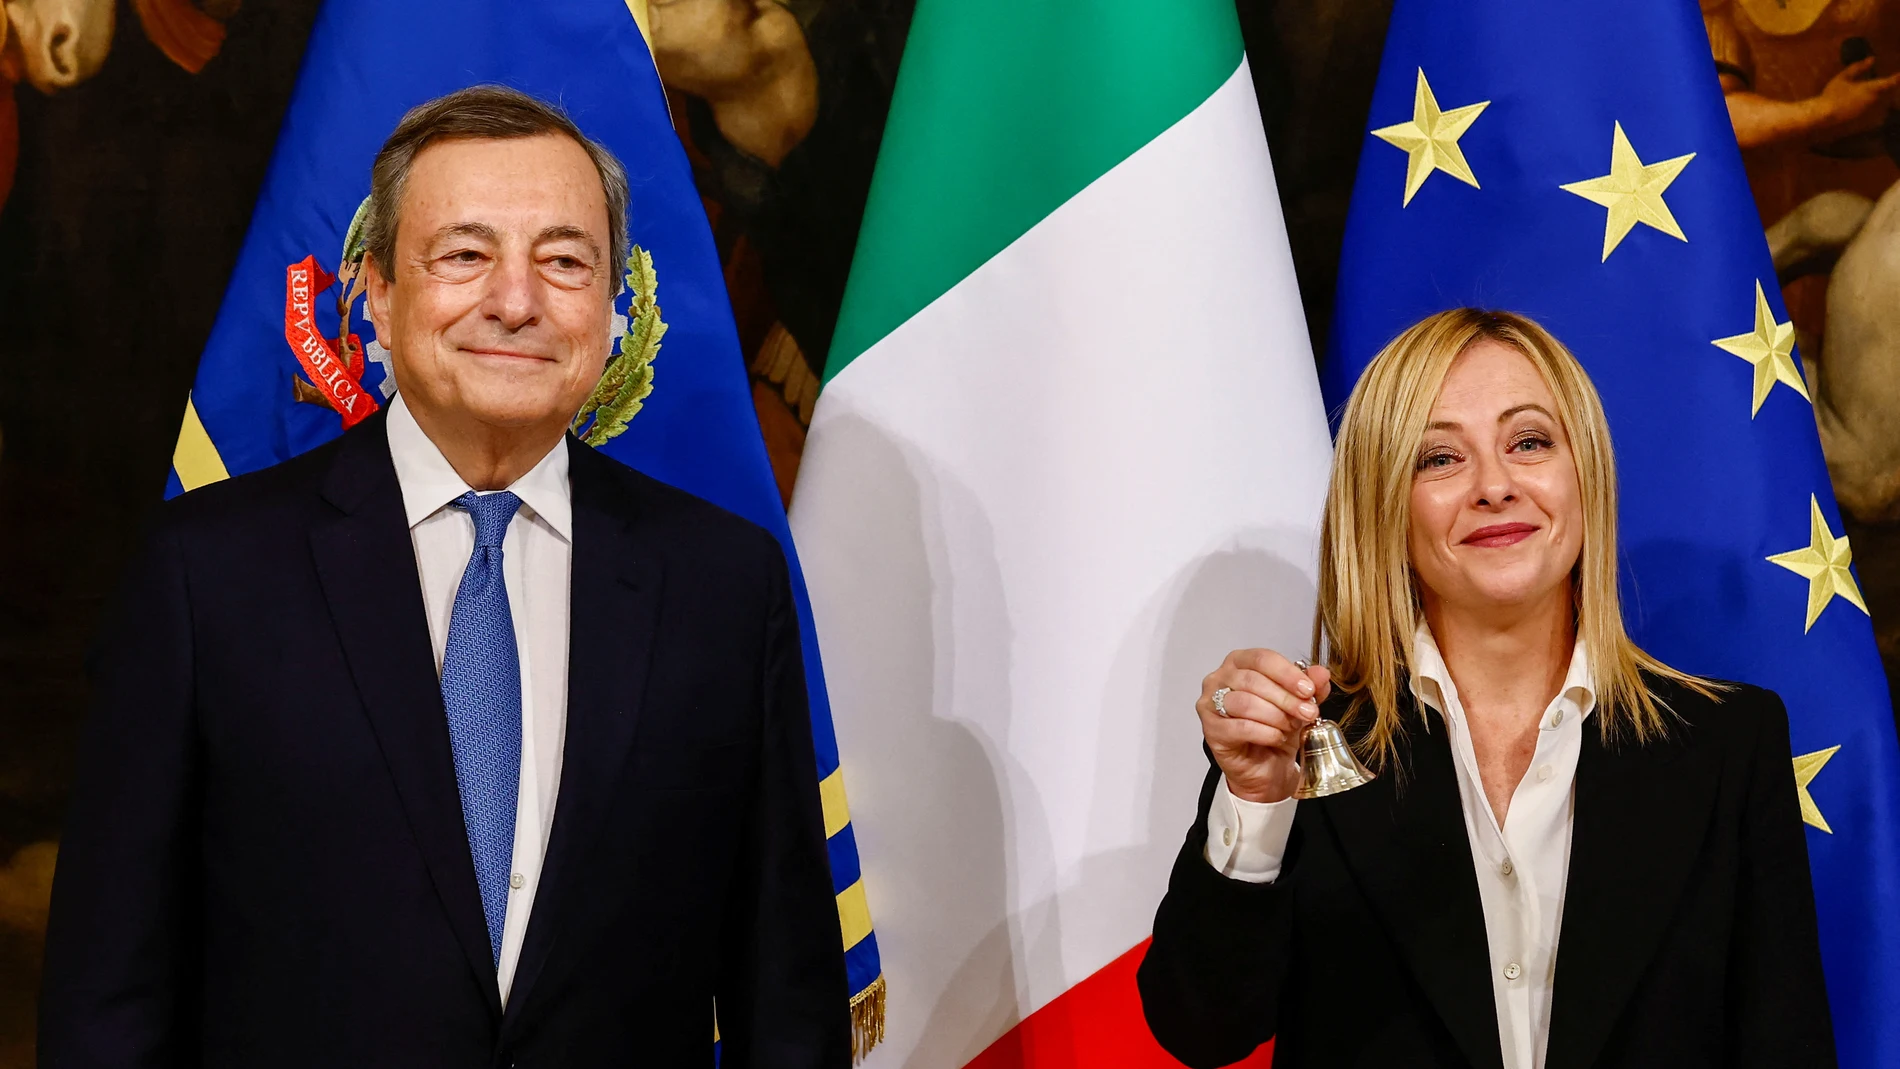 Mario Draghi traspasa los poderes a Giorgia Meloni